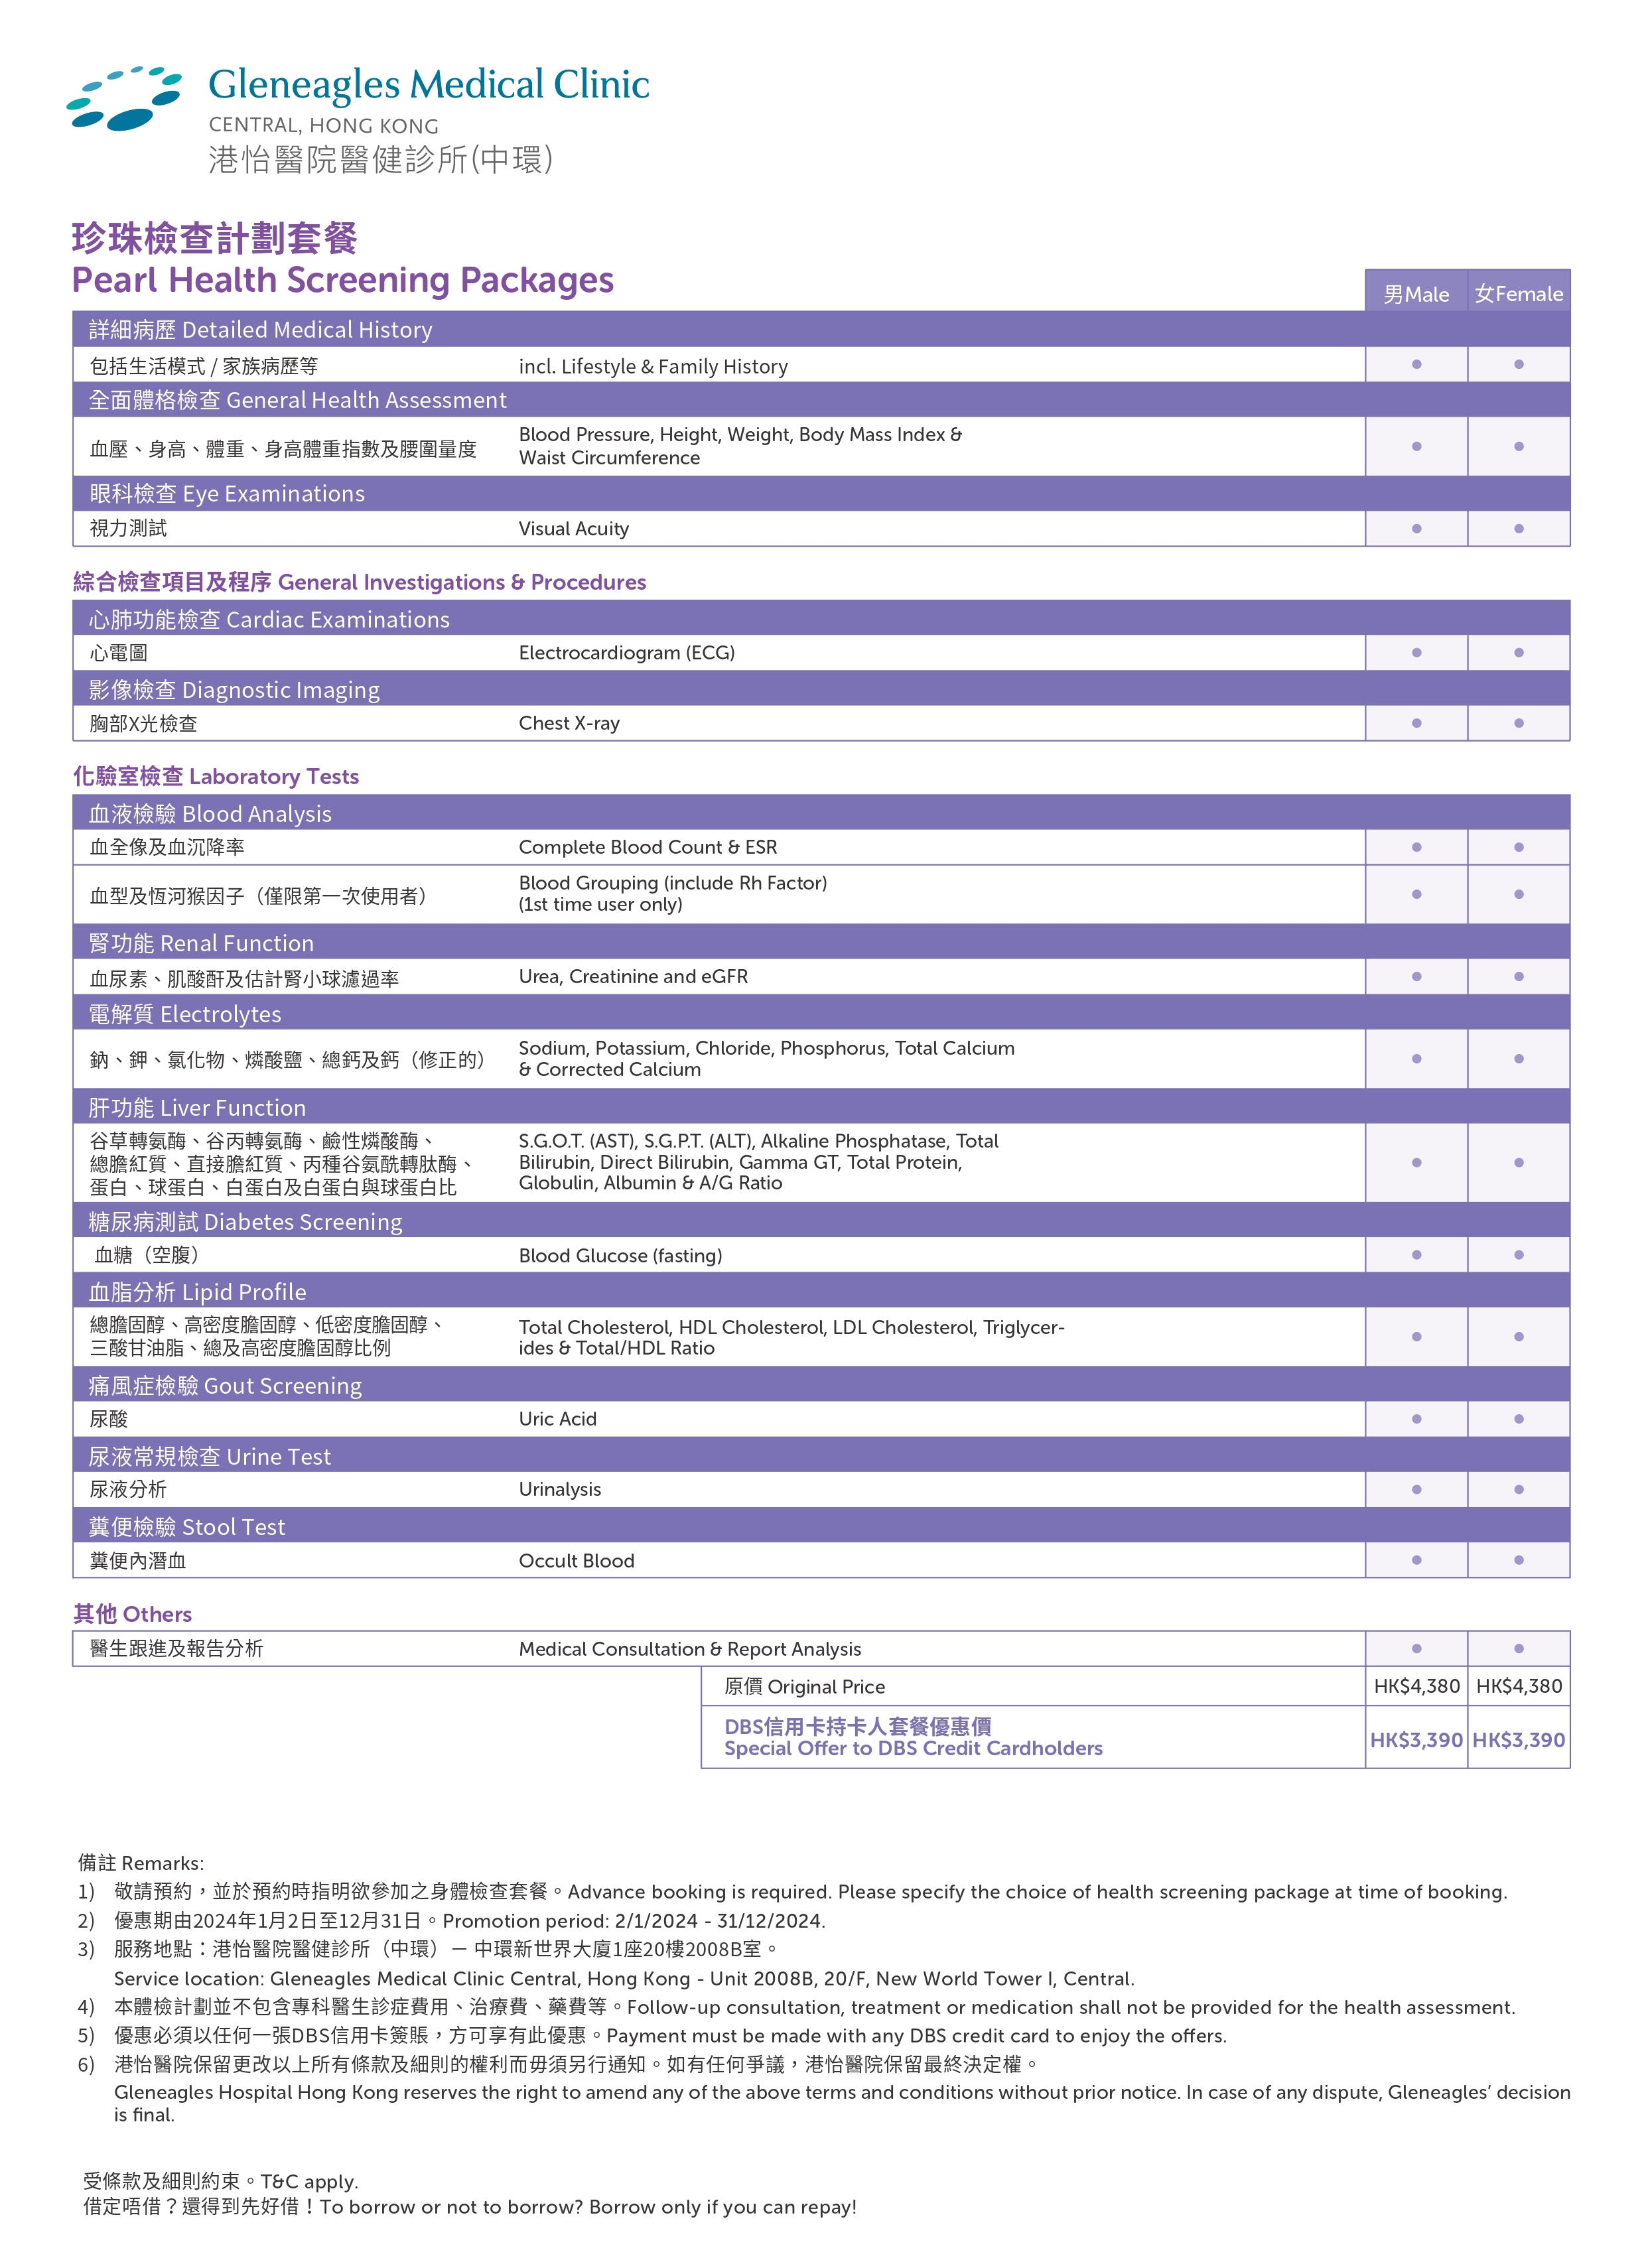 GMC-Pearl-Health-Package-Leaflet-DBS_01_page-0001.jpg#asset:273619